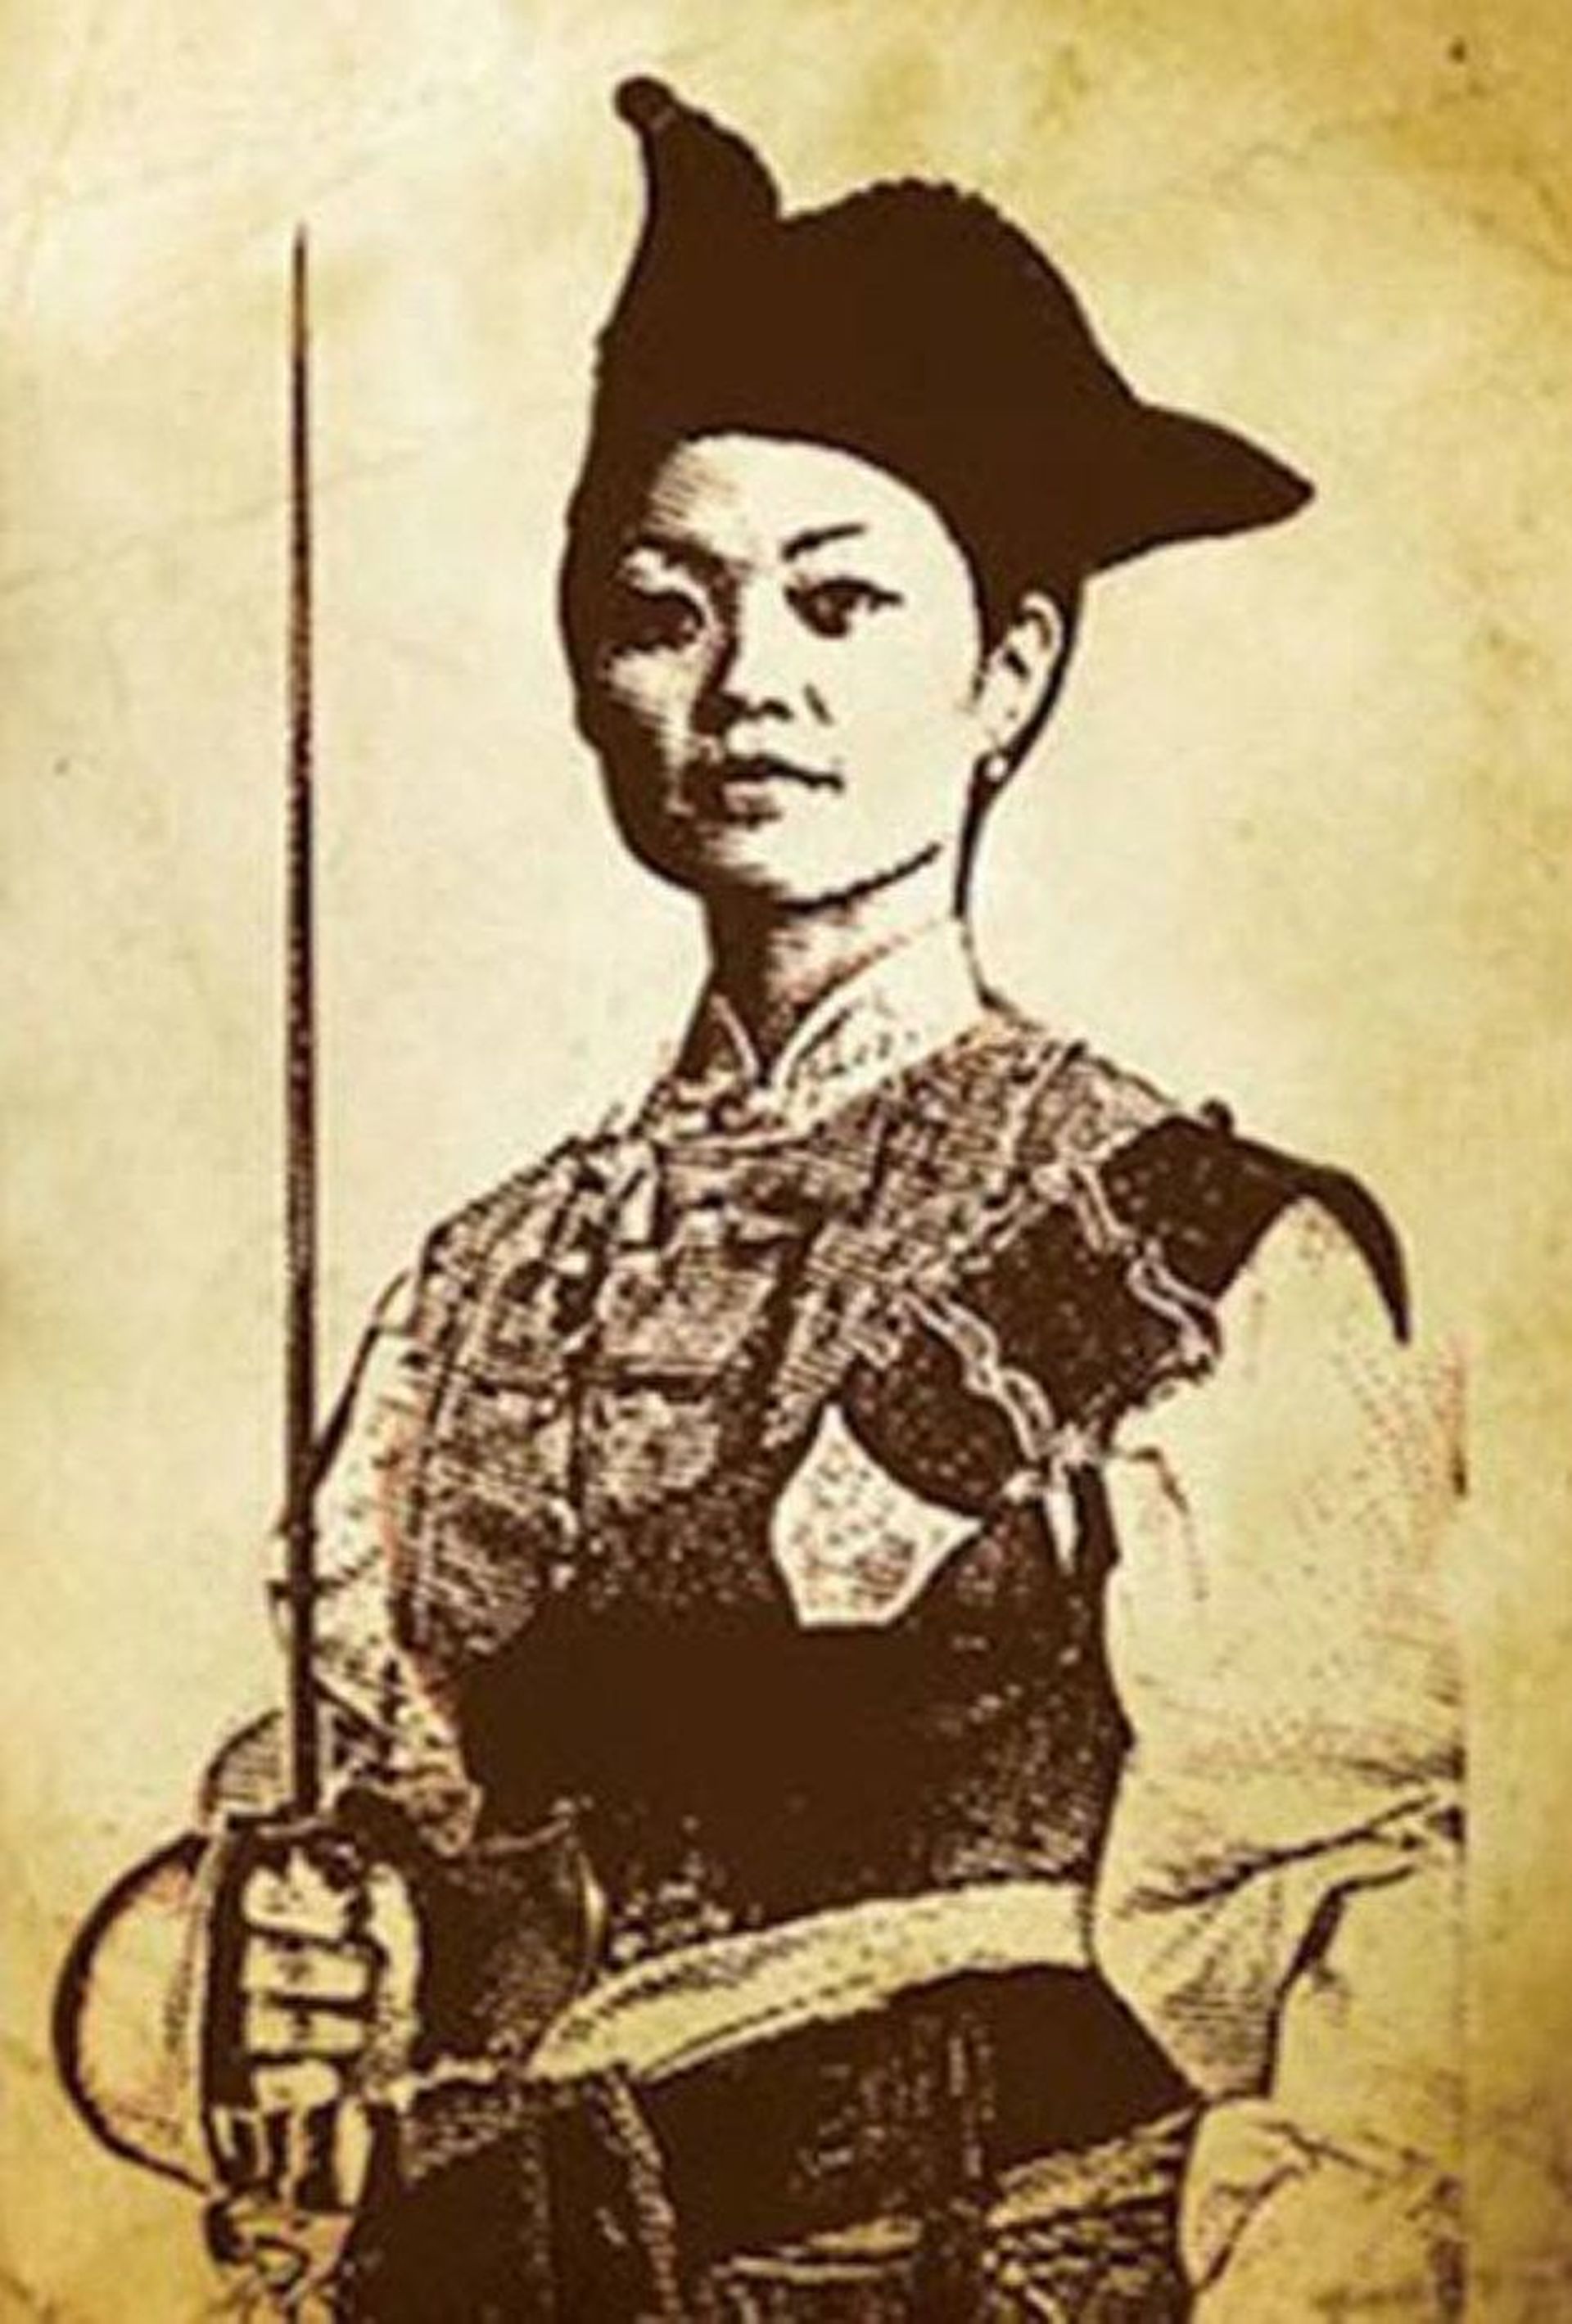 Portrait d'été : découvrez Chung Shih, la plus grande Pirate de l'histoire